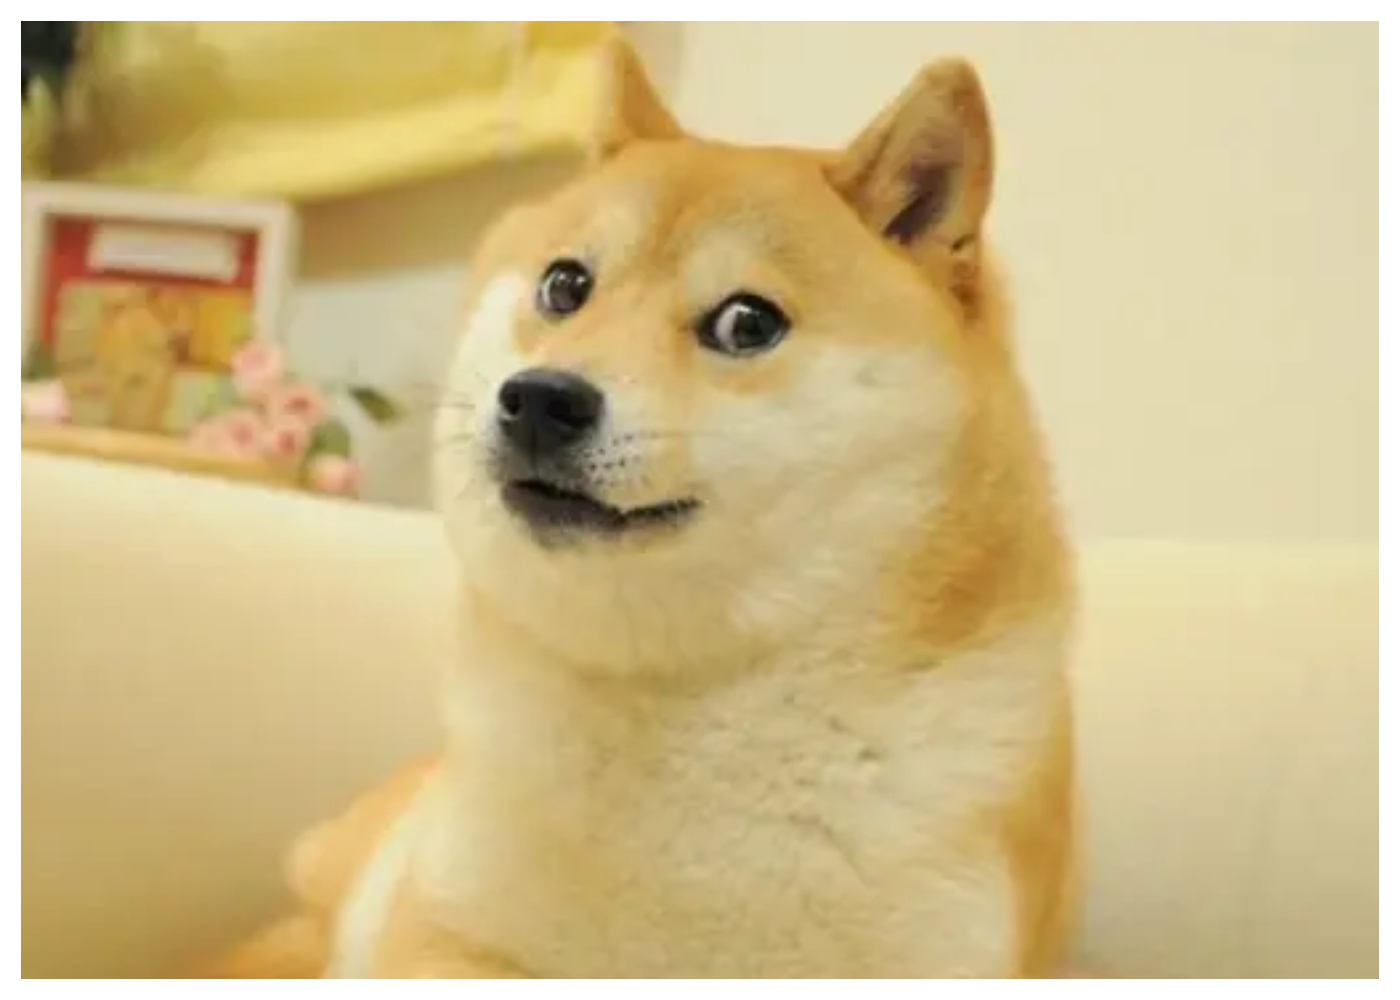 Murió Kabosu, el perro del meme Doge en Japón 